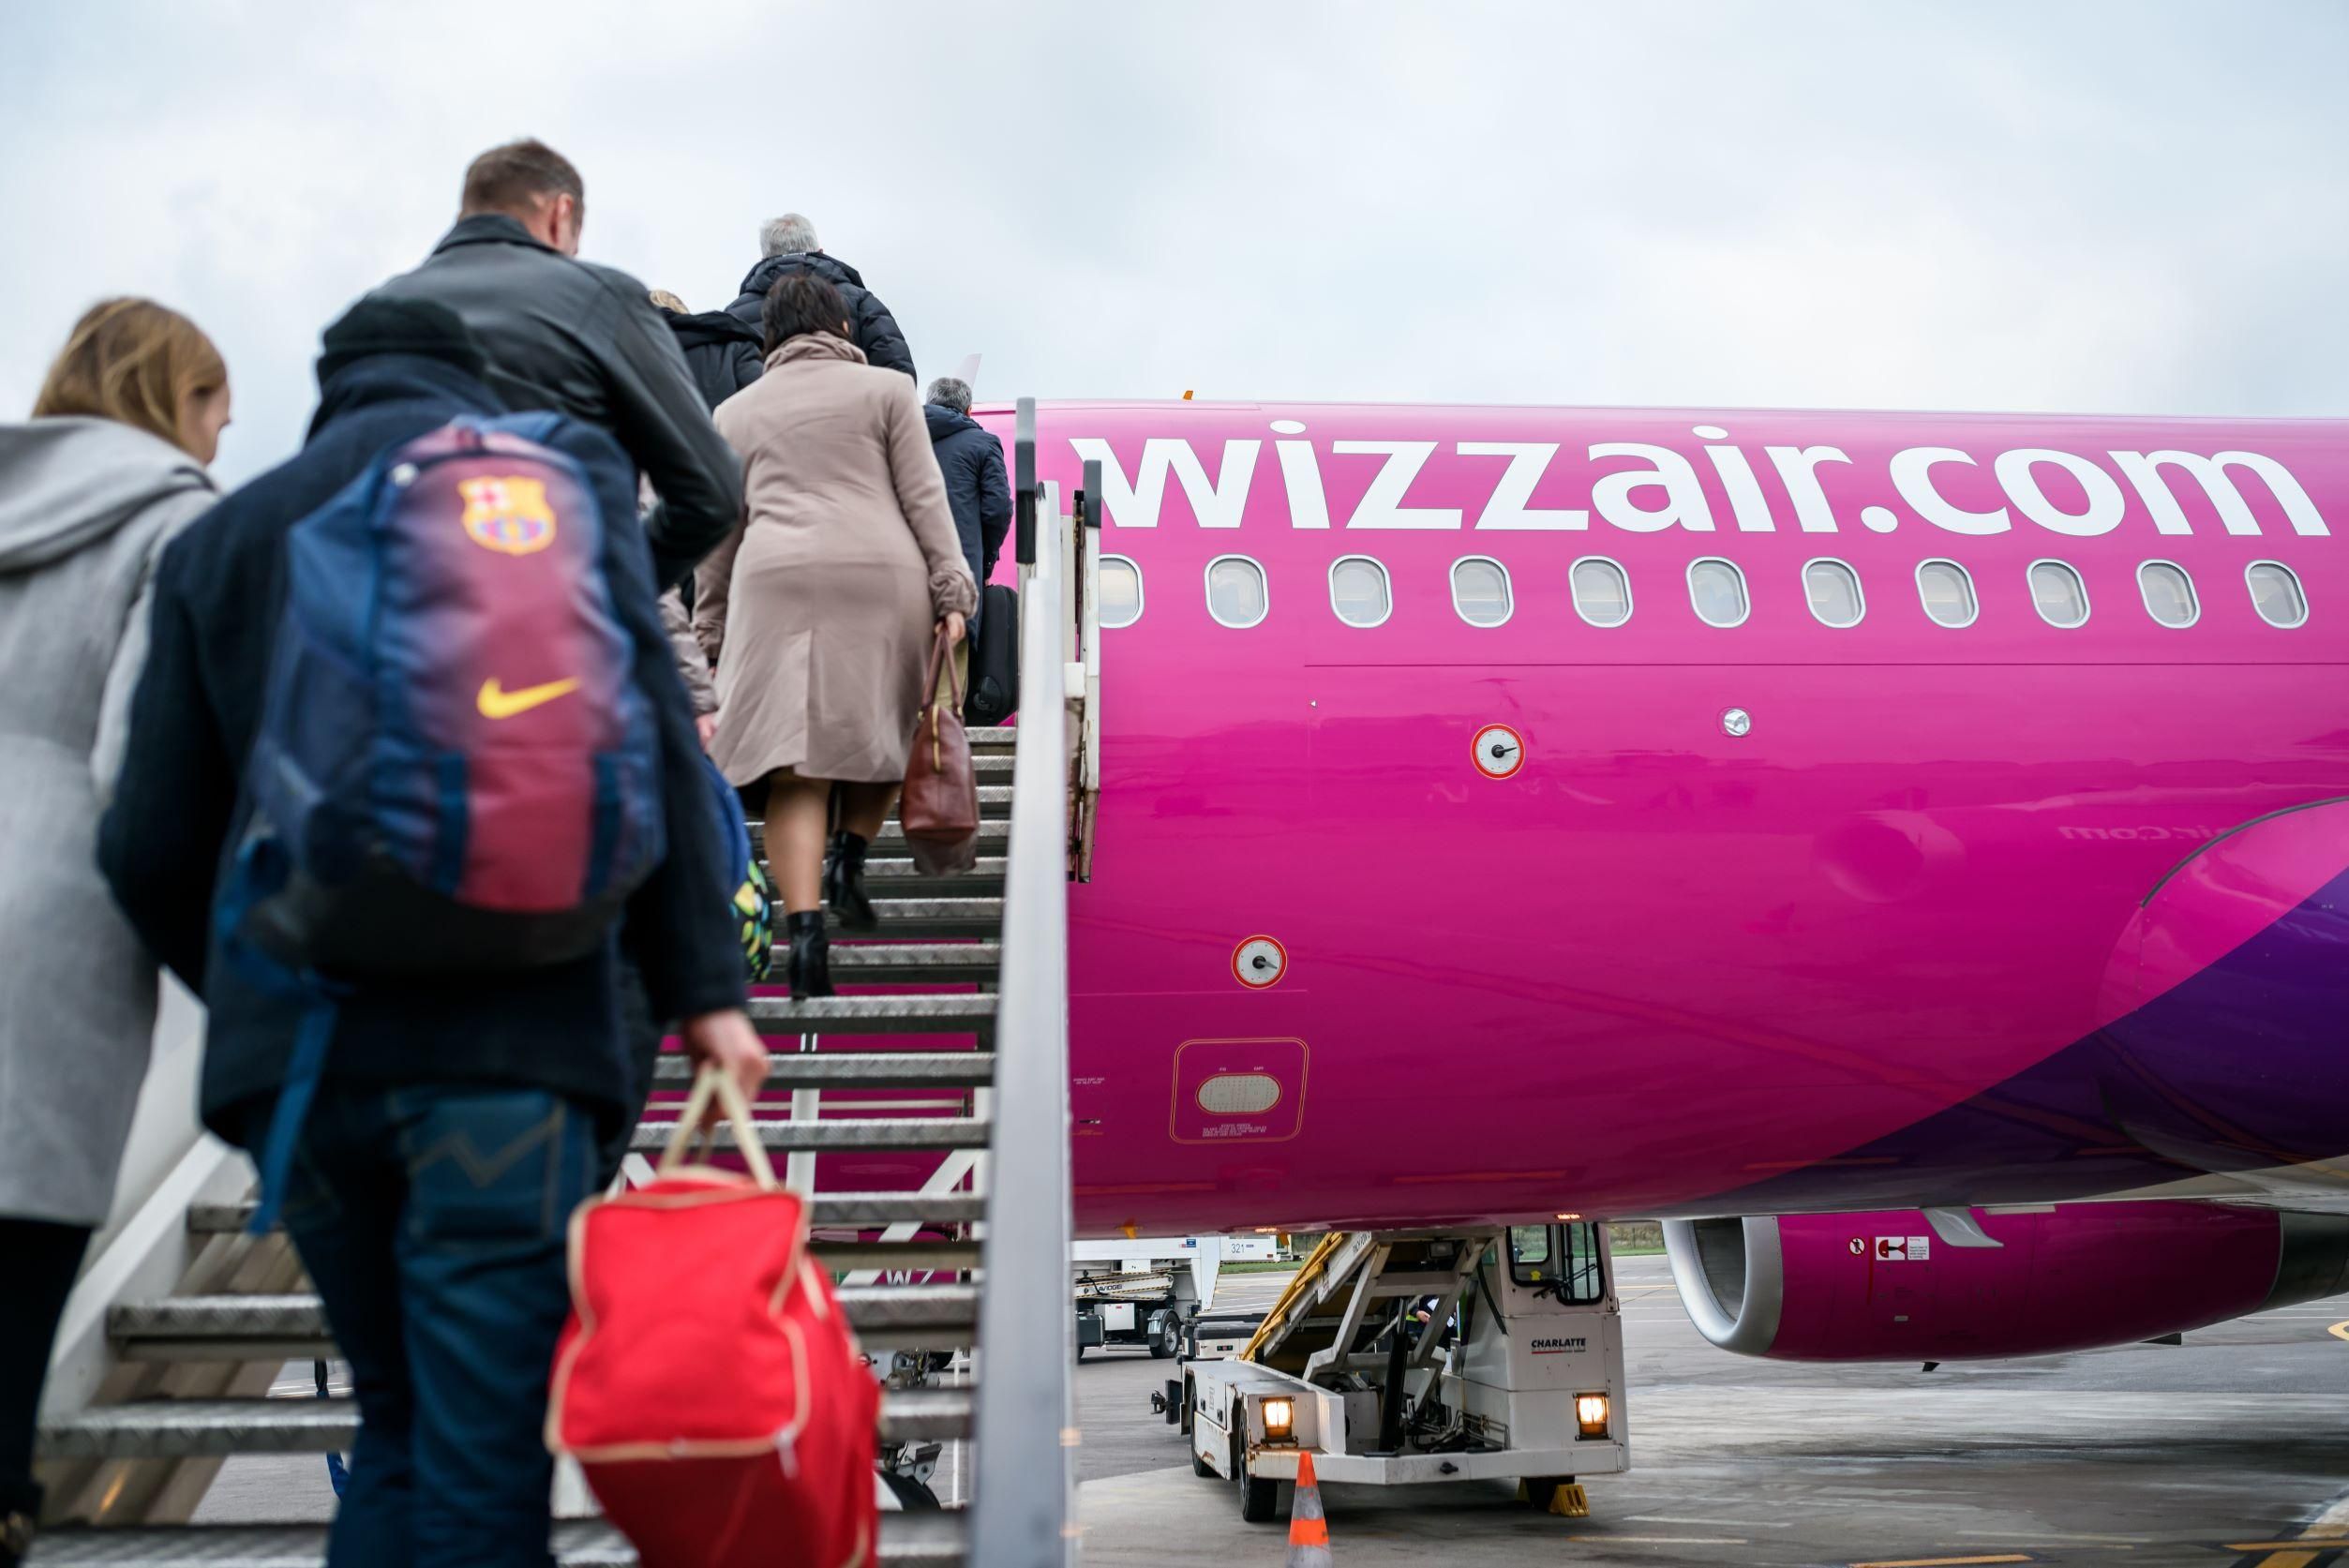 A WizzAir közleményta adott ki a londoni hóhelyzet miatt